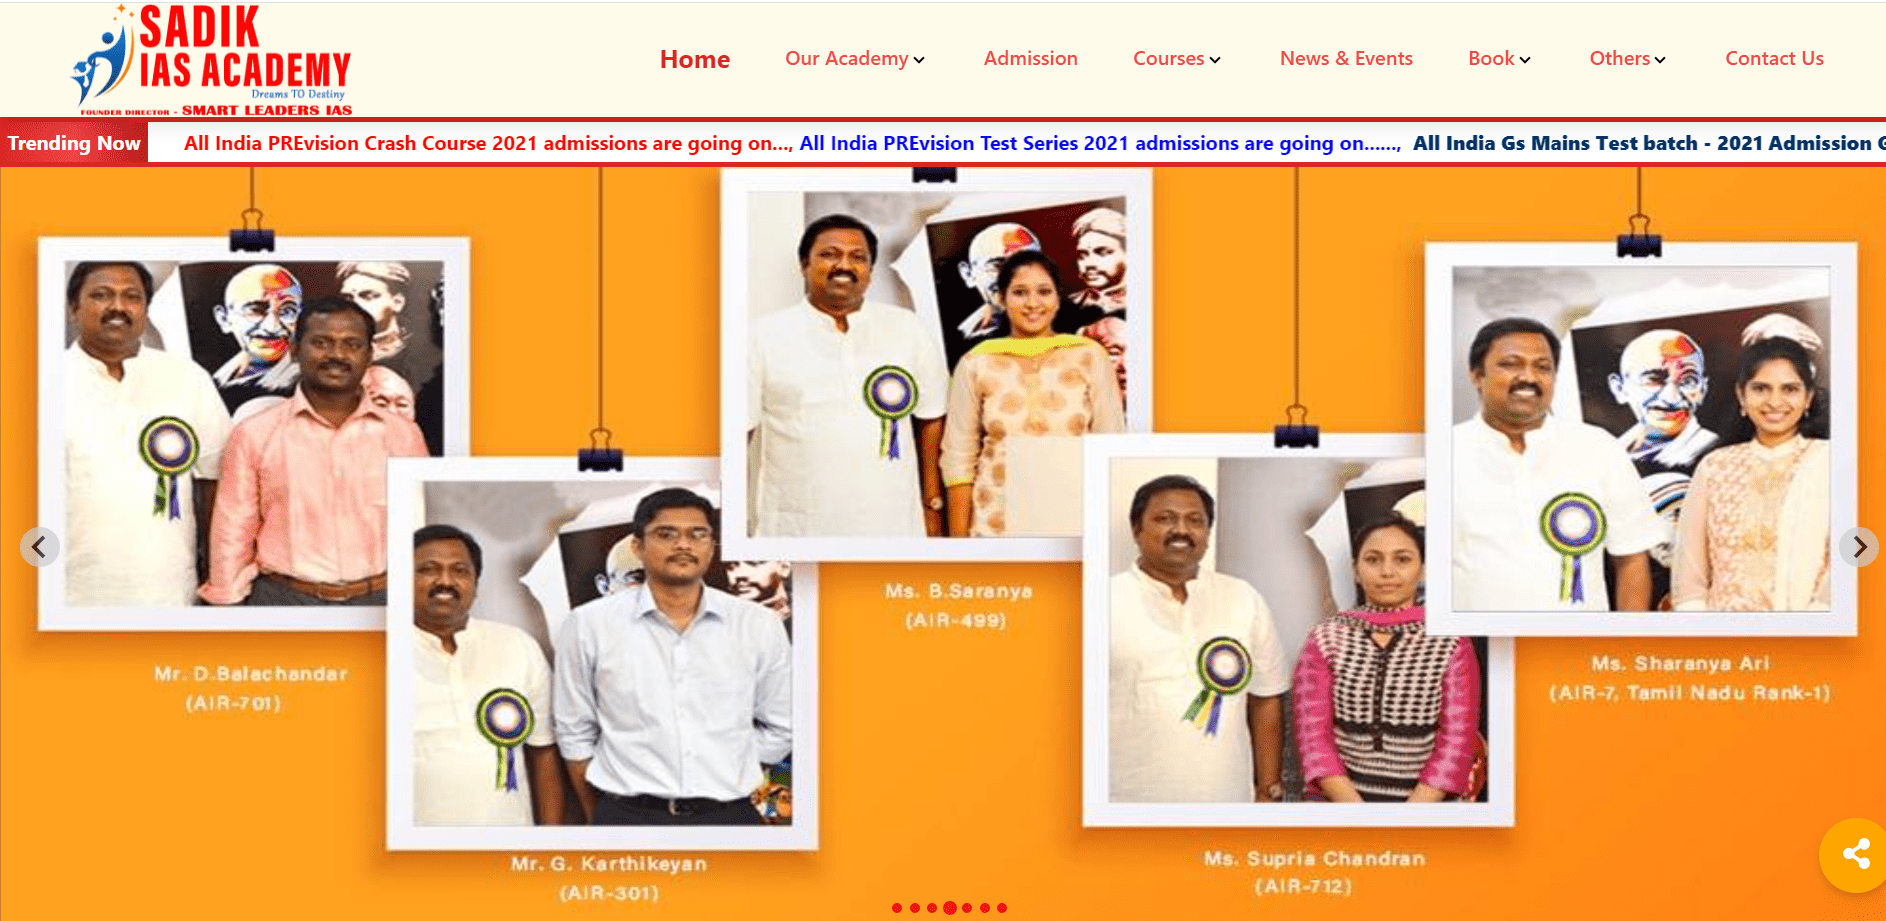 8Queens Software Company Chennai - Sadik Smart IAS Academy